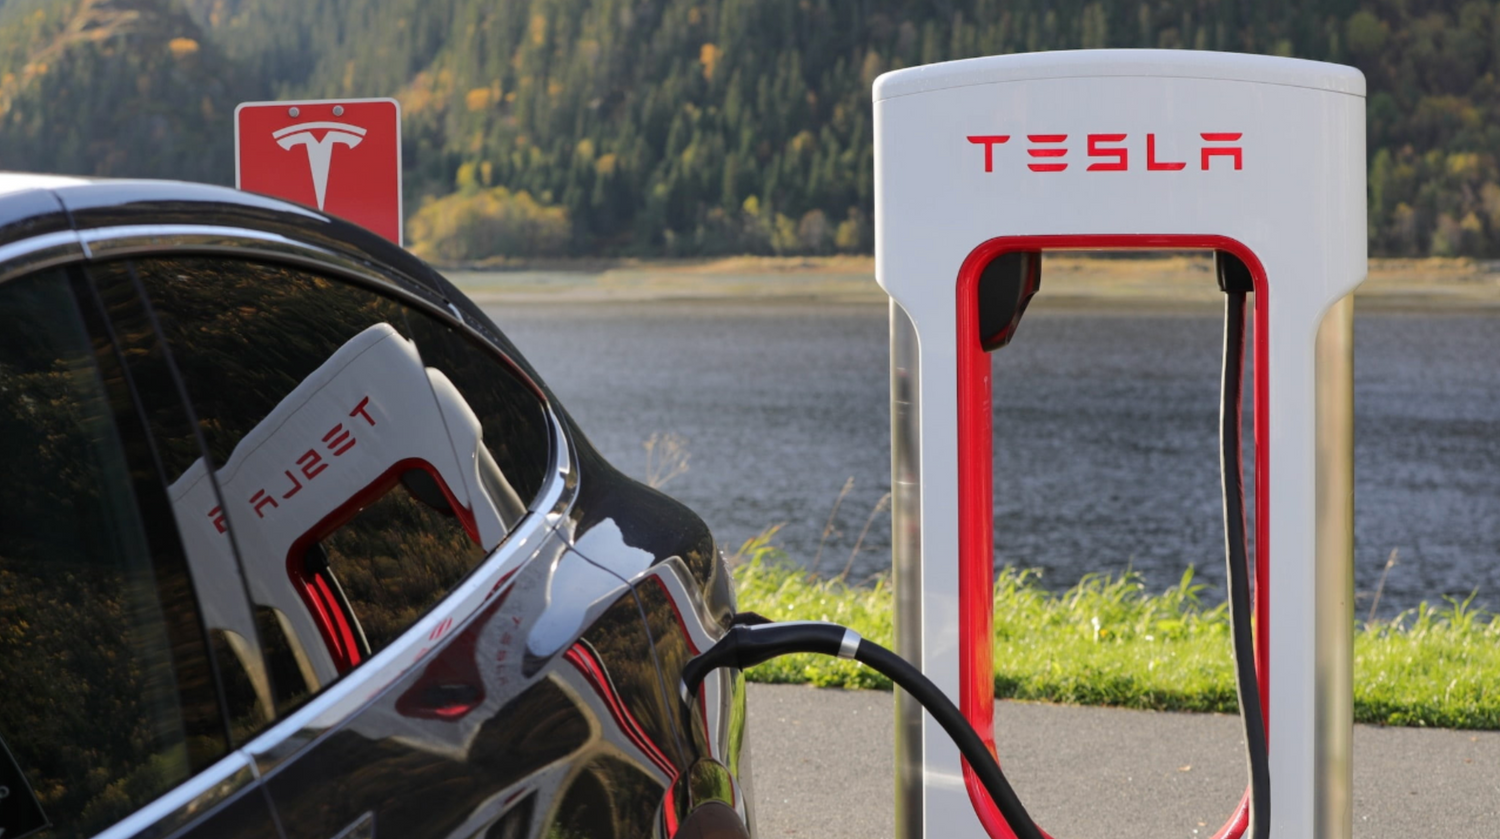 Tesla-Elon-Musk-Vehicle-to-grid-UK